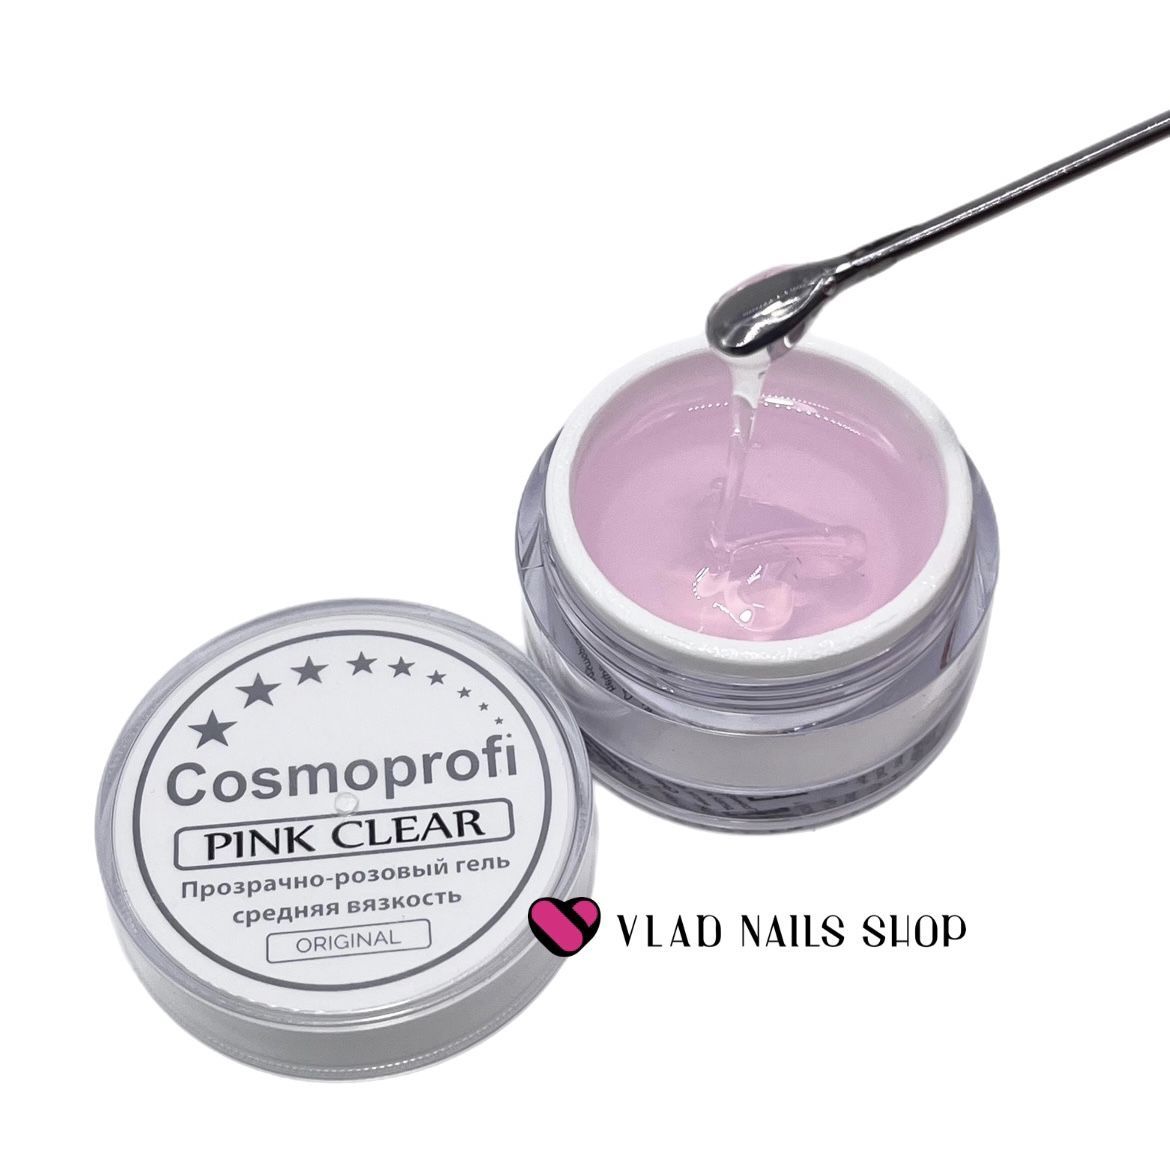 Гель COSMOPROFI прозразно-розовый средняя вязкость Pinк Clear 50гр.